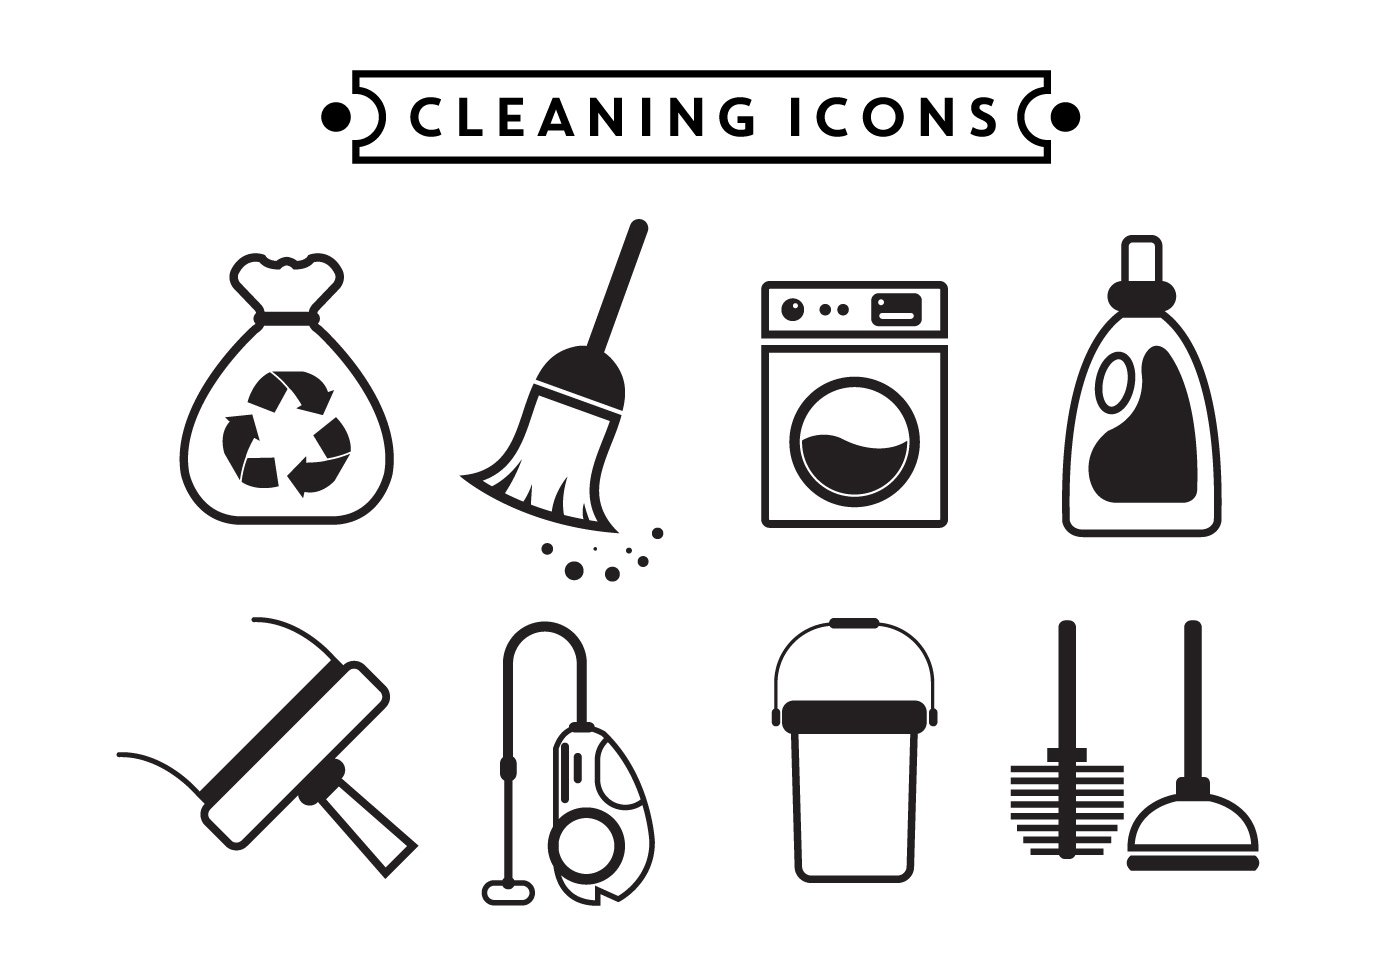 Clean icon. Уборка иконка. Пиктограмма уборка. Иконка инвентарь для уборки. Уборка символ.